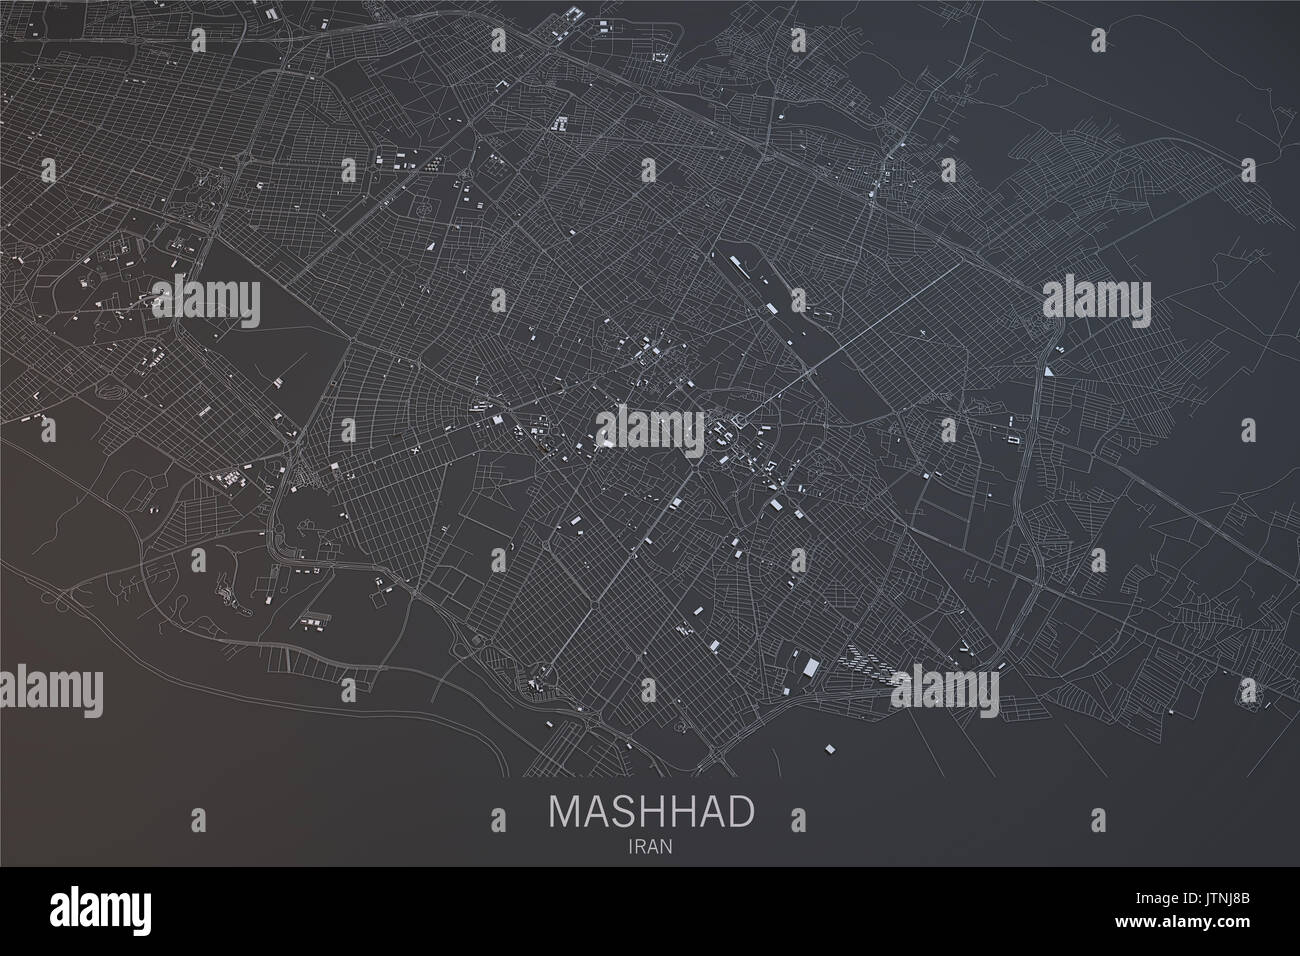 Mashhad map, satellite view, city, Iran Stock Photo